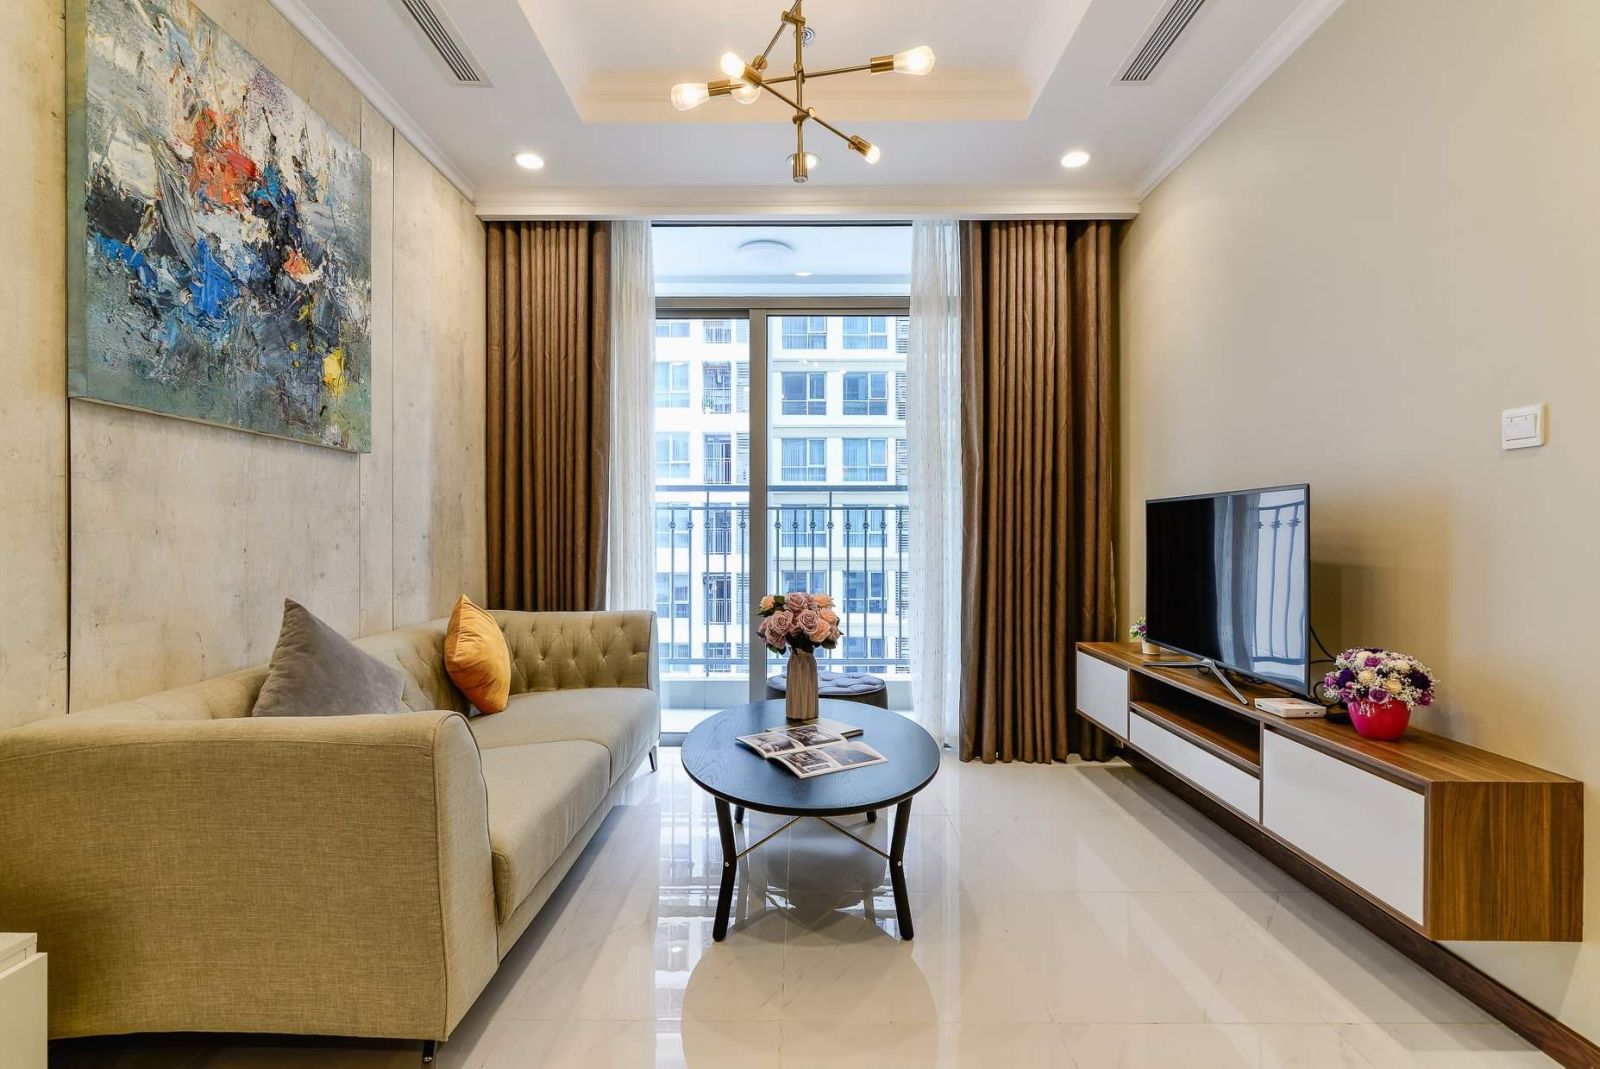 Thiết kế căn hộ chung cư 70m2 phong cách tối giản tập trung vào công năng